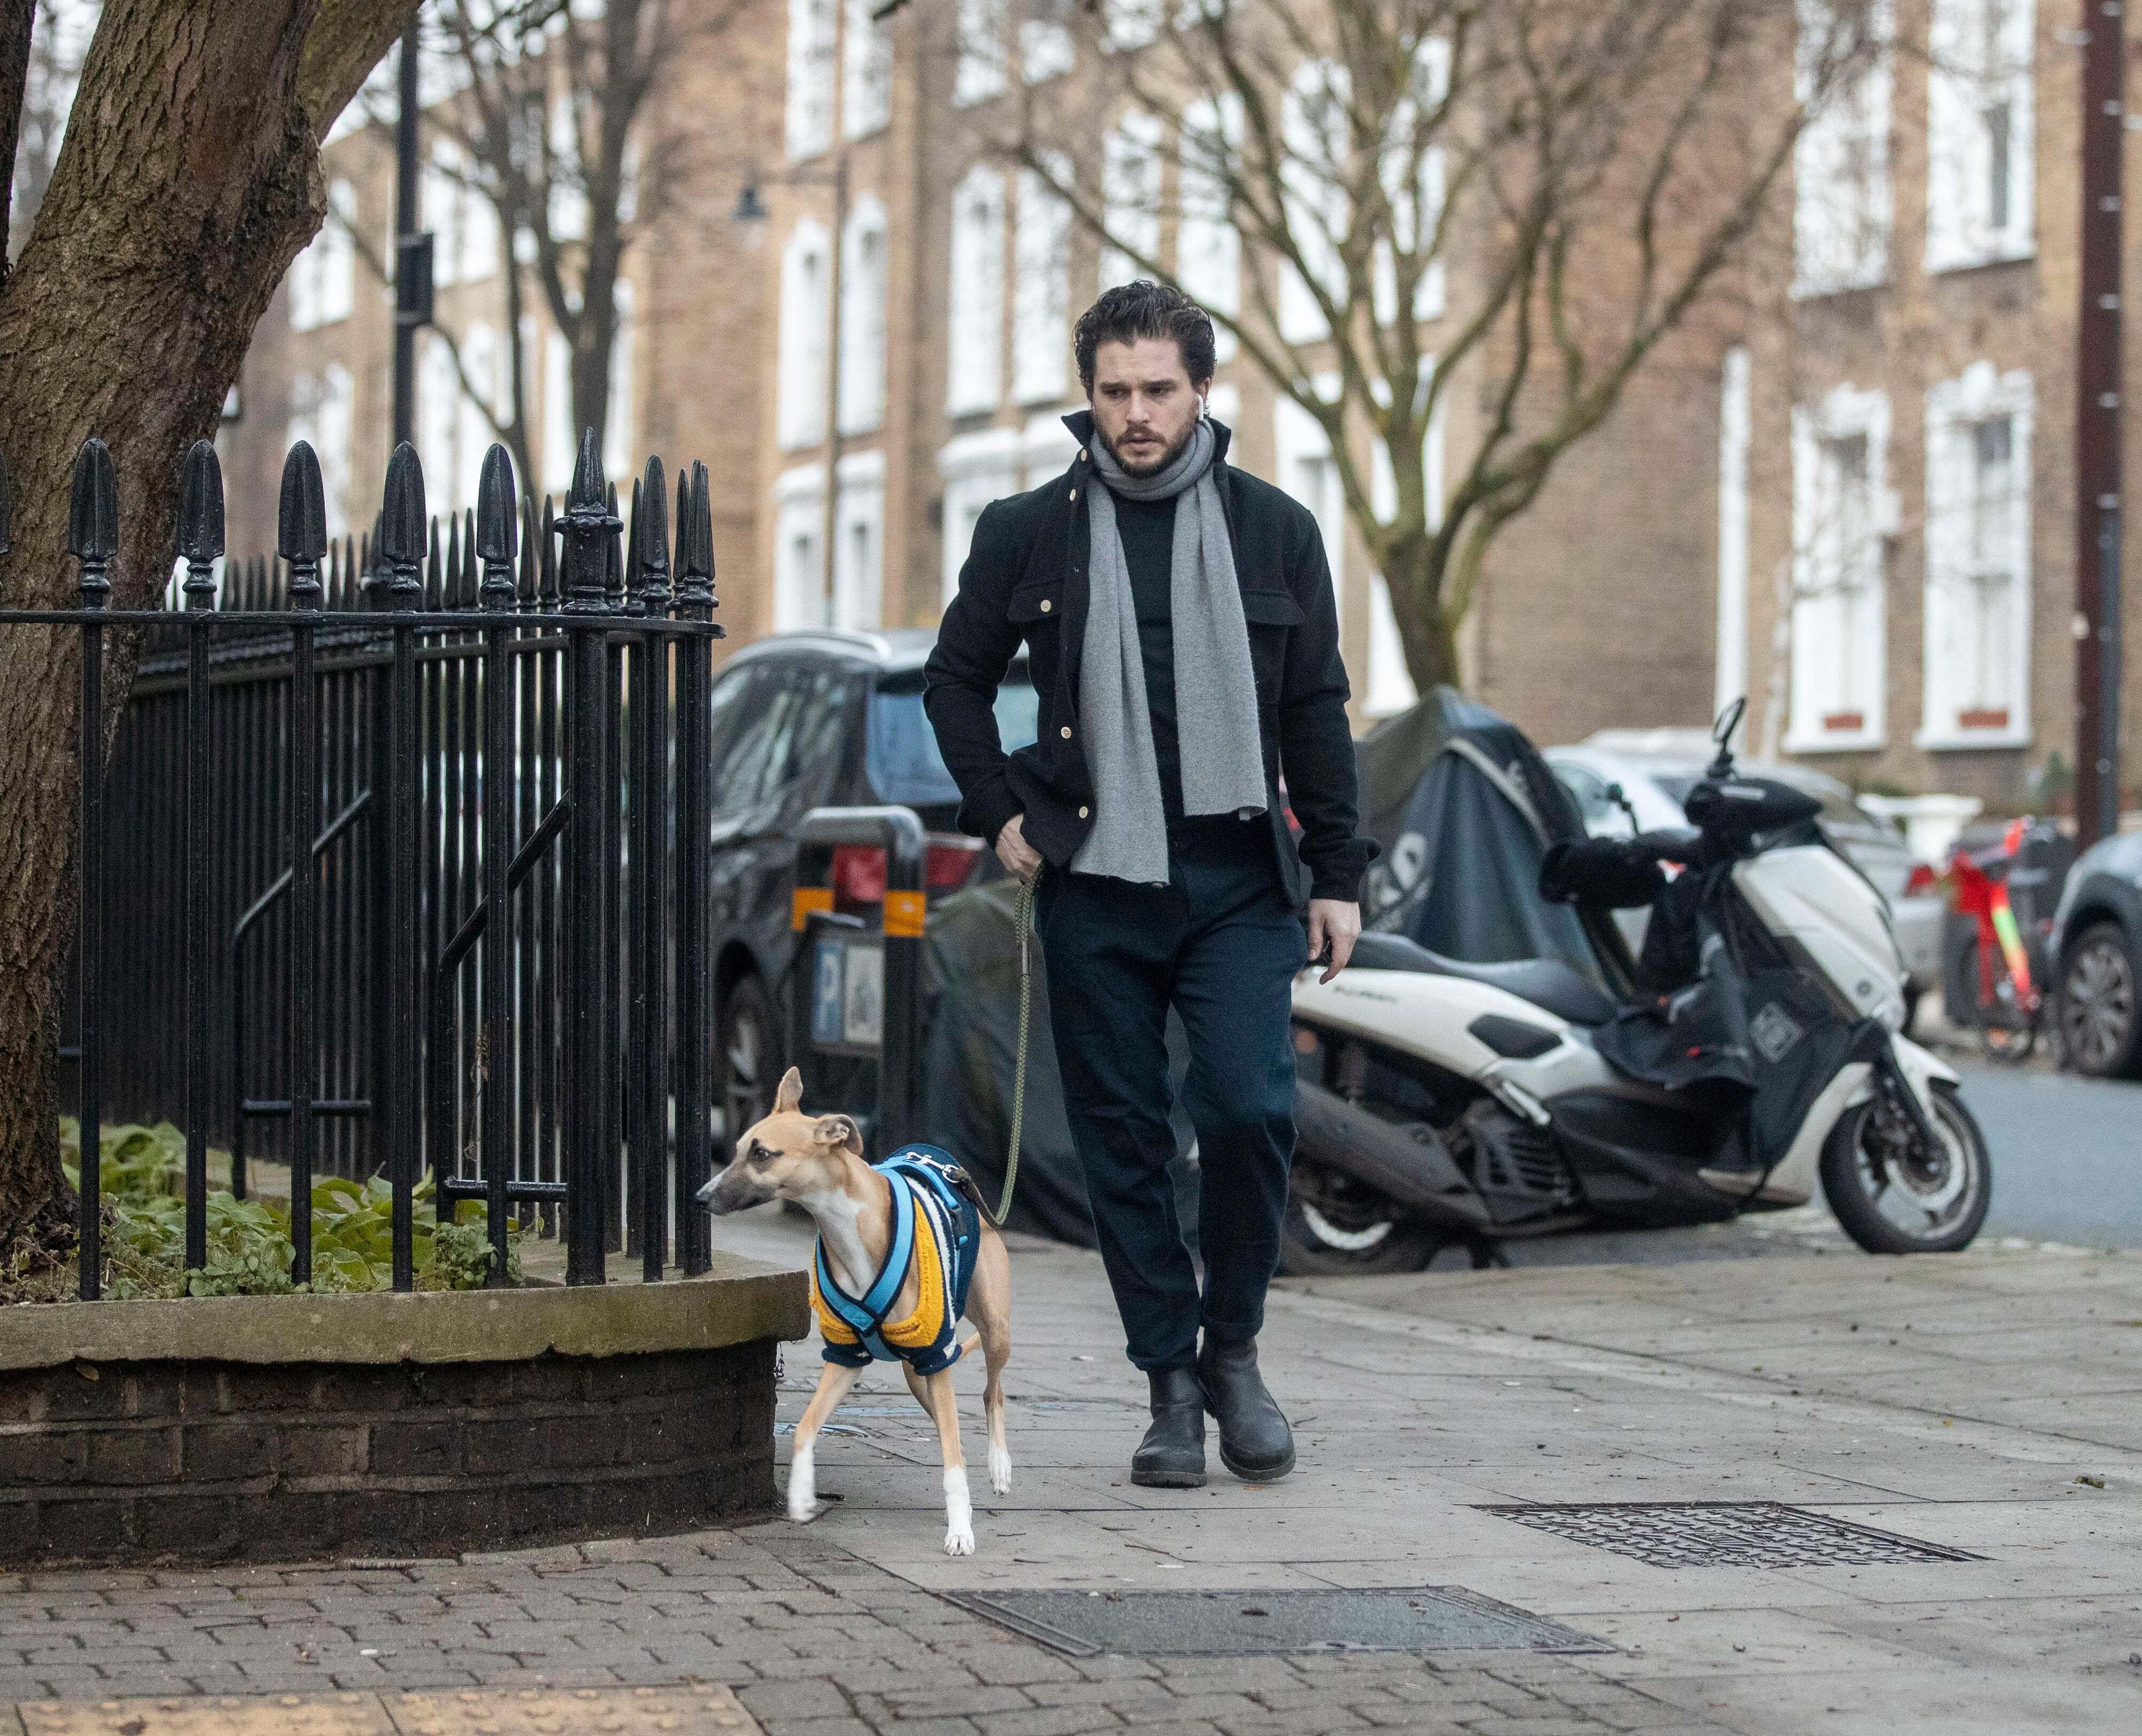 Kit Harington sacó a pasear a su perro por las calles de Islington, al norte de Londres, Inglaterra. El actor respetó las normas de confinamiento y se limita a salir solo para realizar compras esenciales, correr (solo) o sacar a su mascota a hacer sus necesidades